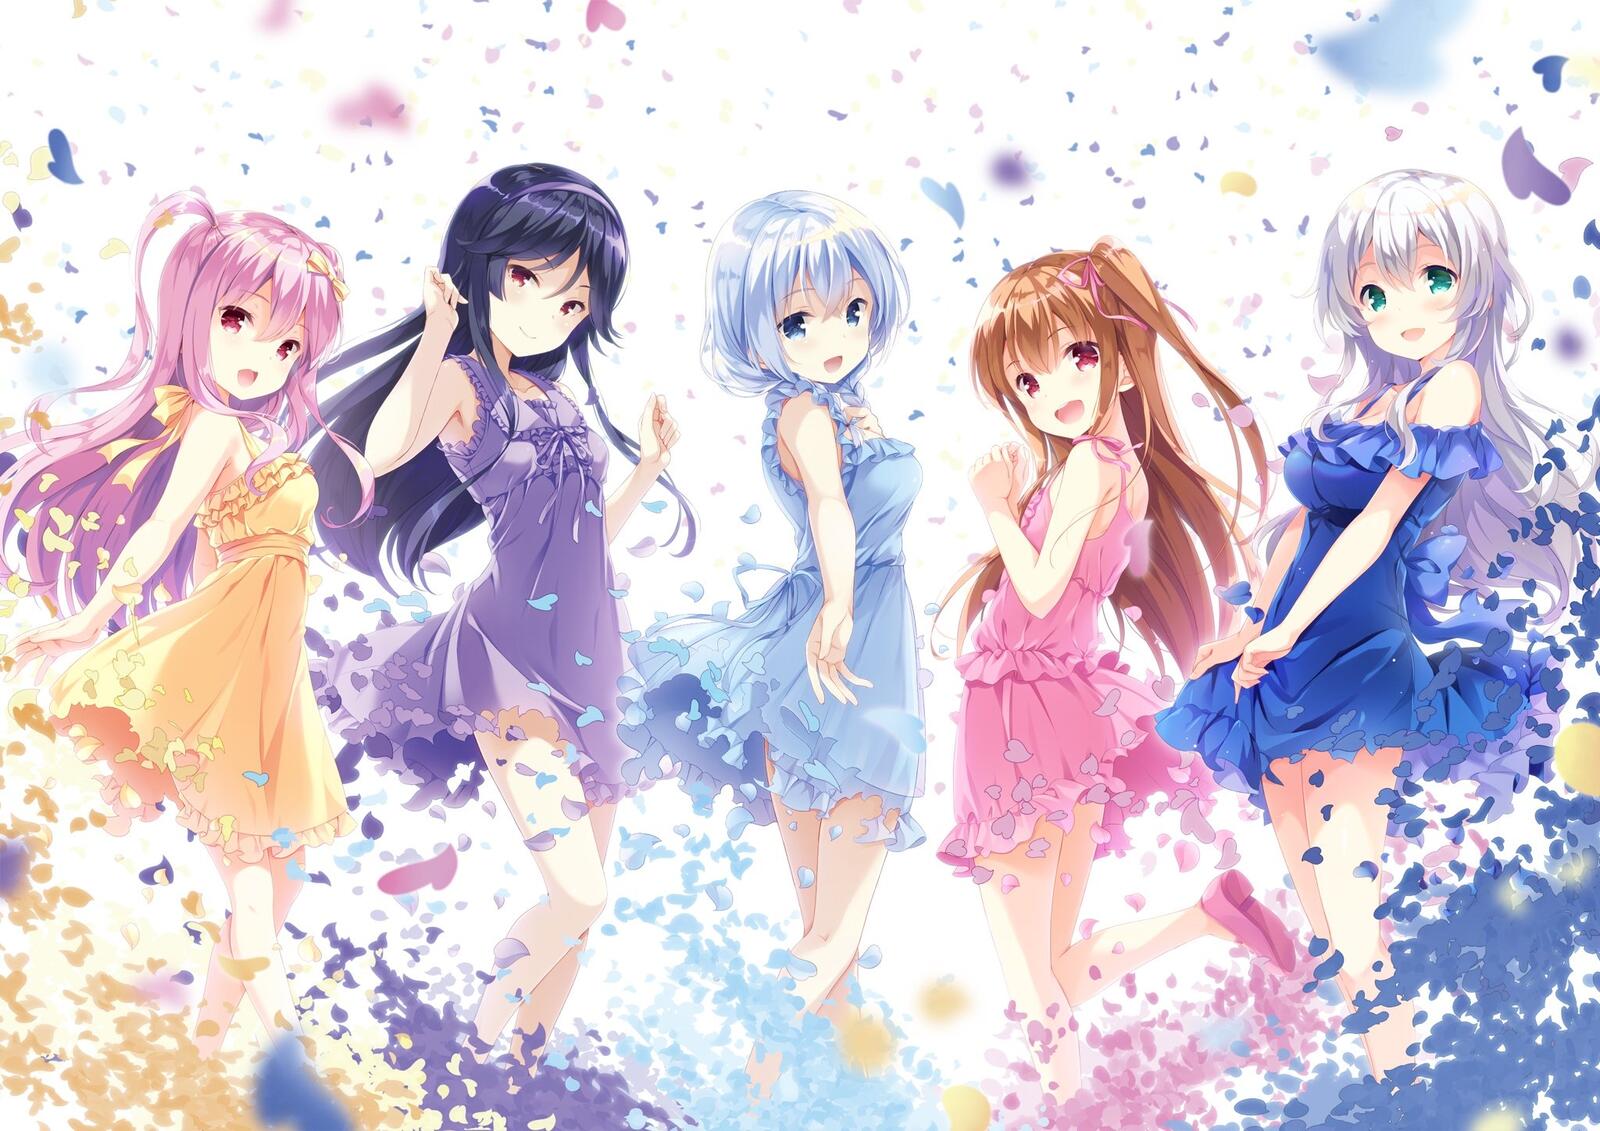 Wallpapers wallpaper anime girls moe light dress on the desktop